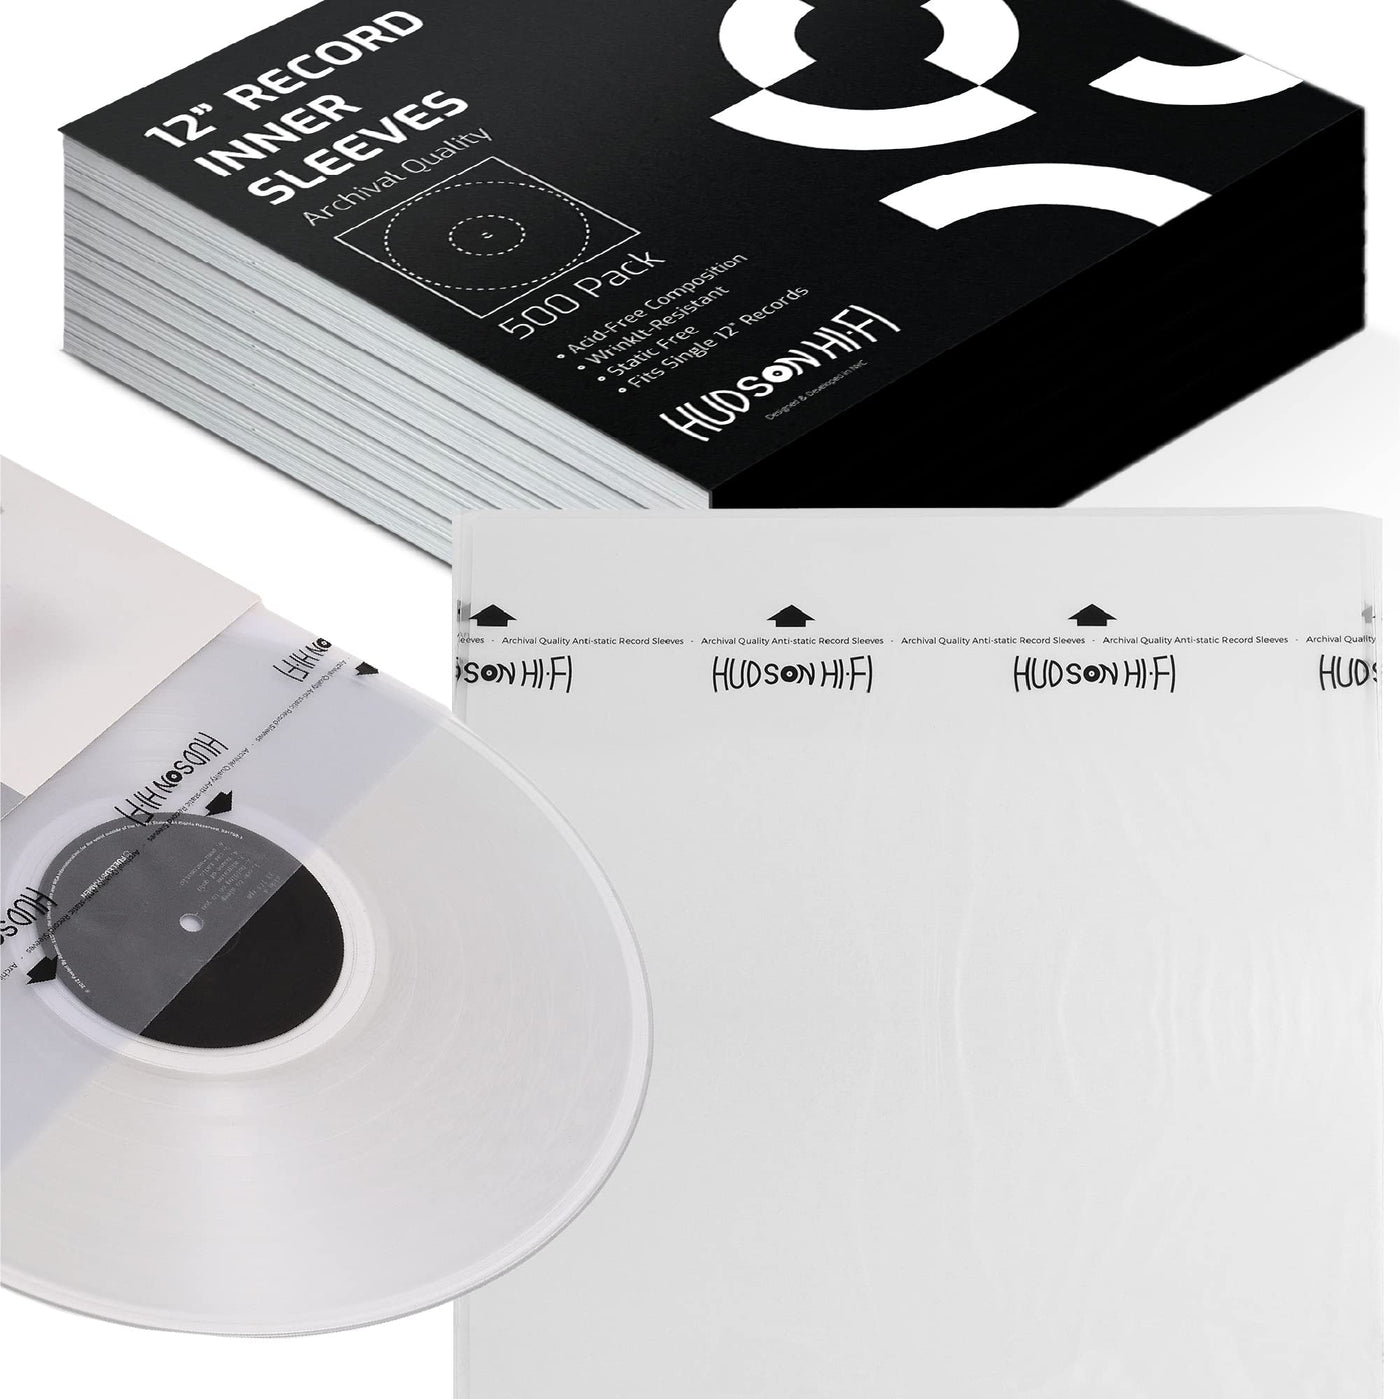 12 Inner Sleeves - All Styles (individual) – Vinyl Storage Solutions